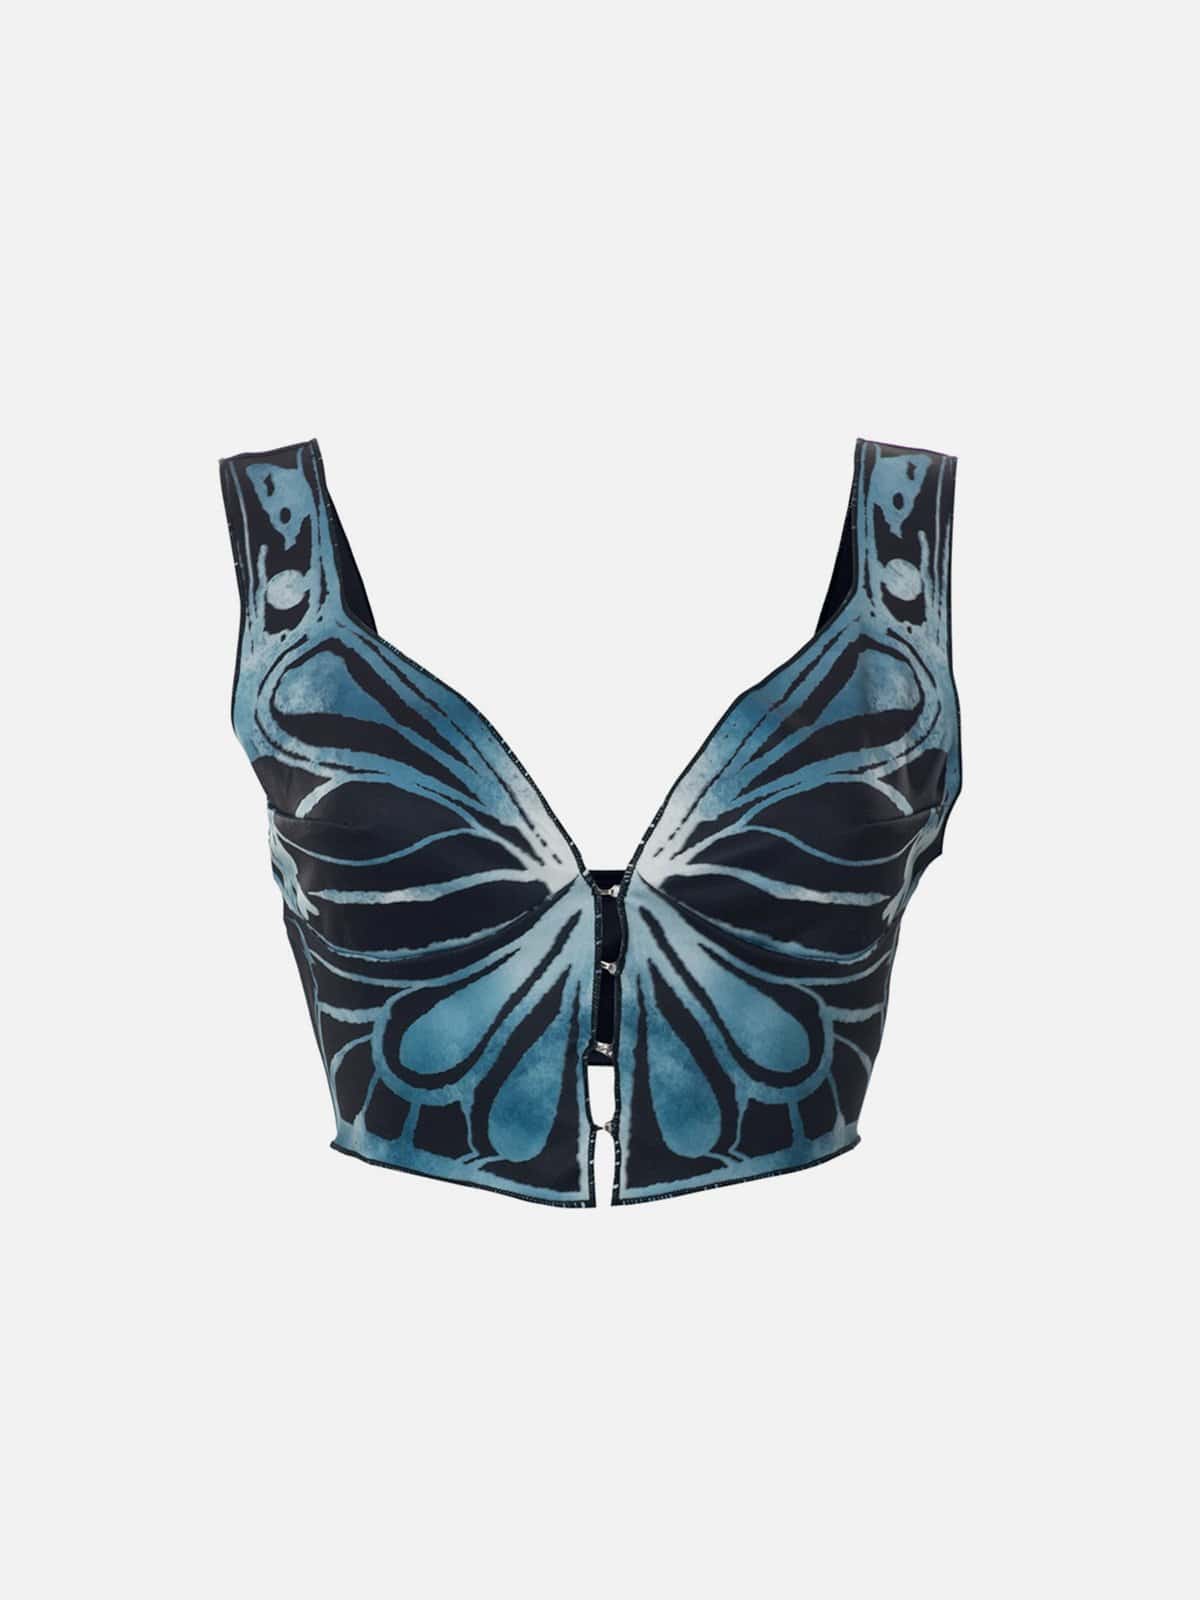 Butterfly Print Vest Streetwear Brand Techwear Combat Tactical YUGEN THEORY